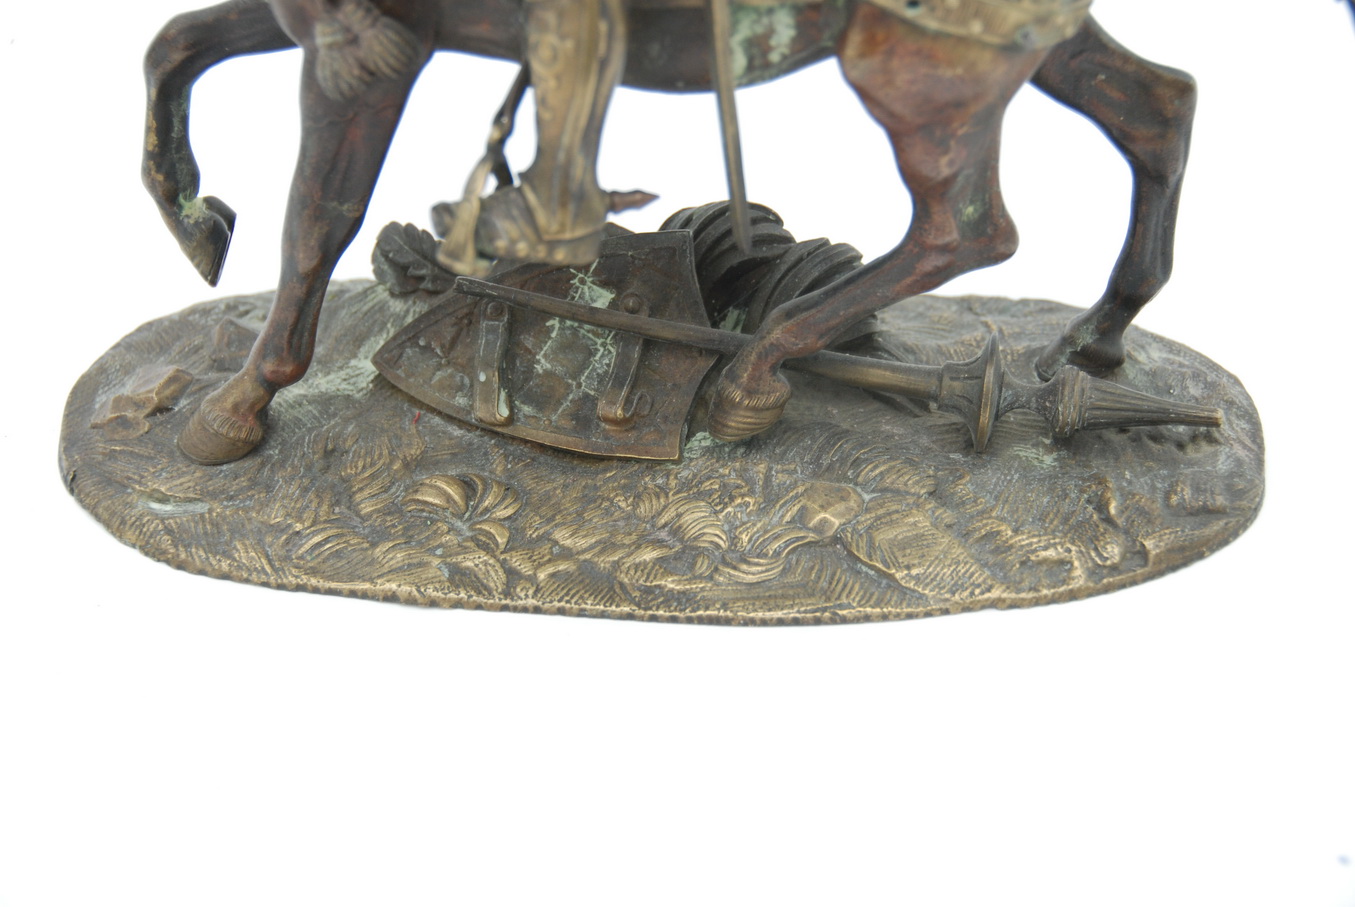 Бронзовая скульптура средневекового рыцаря на коне 18 век, Западная Европа.